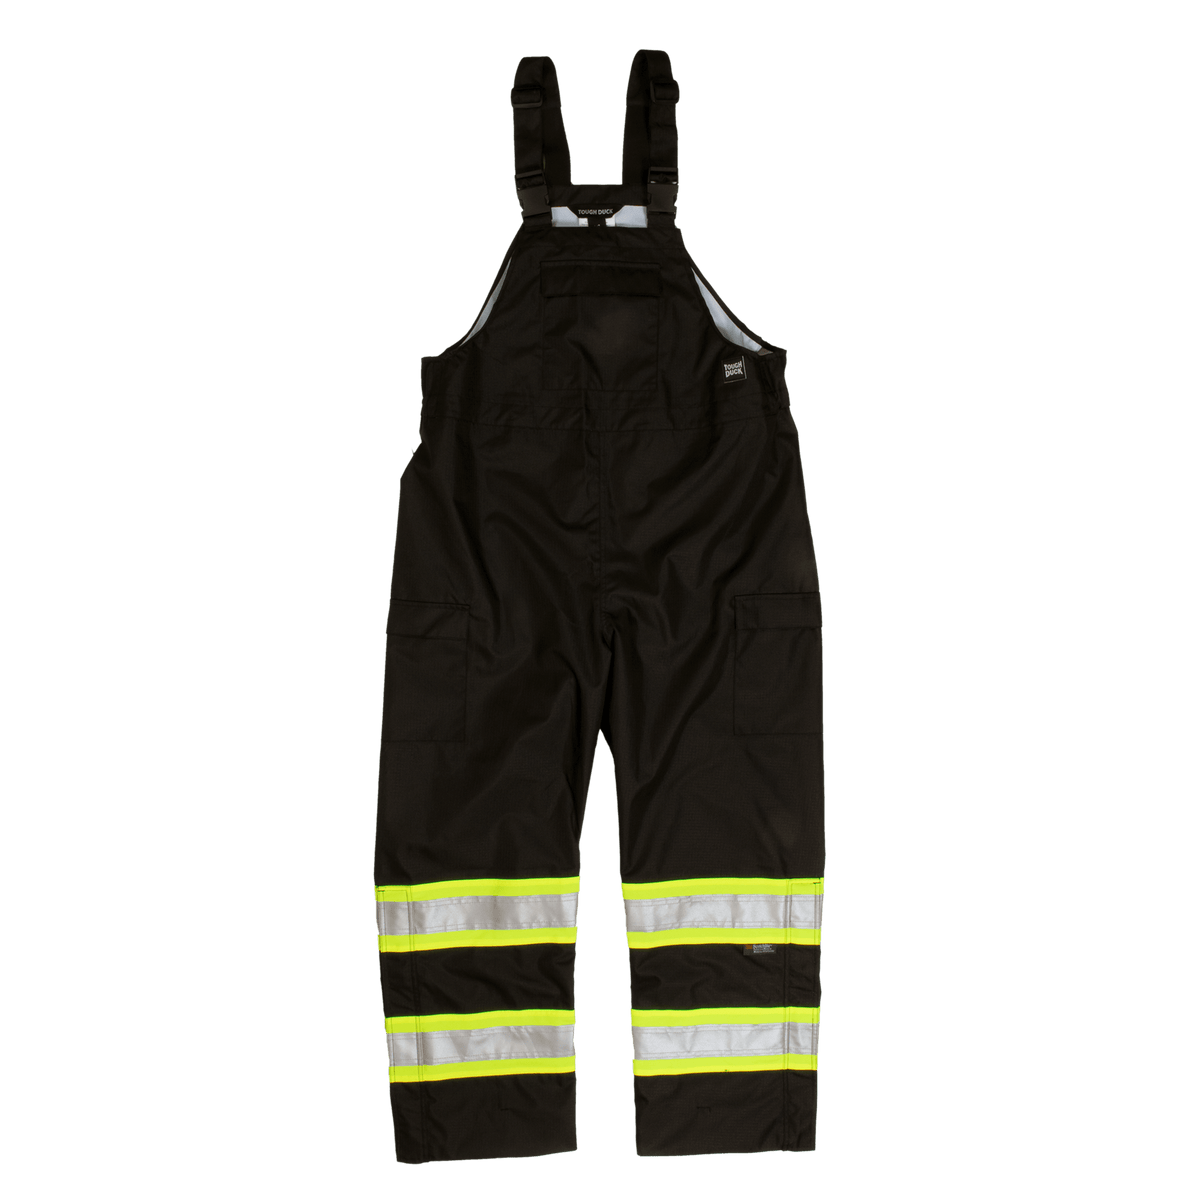 Tough Duck Class E Hi-Vis Waterproof Safety Rain Bib Overall - Work World - Workwear, Work Boots, Safety Gear